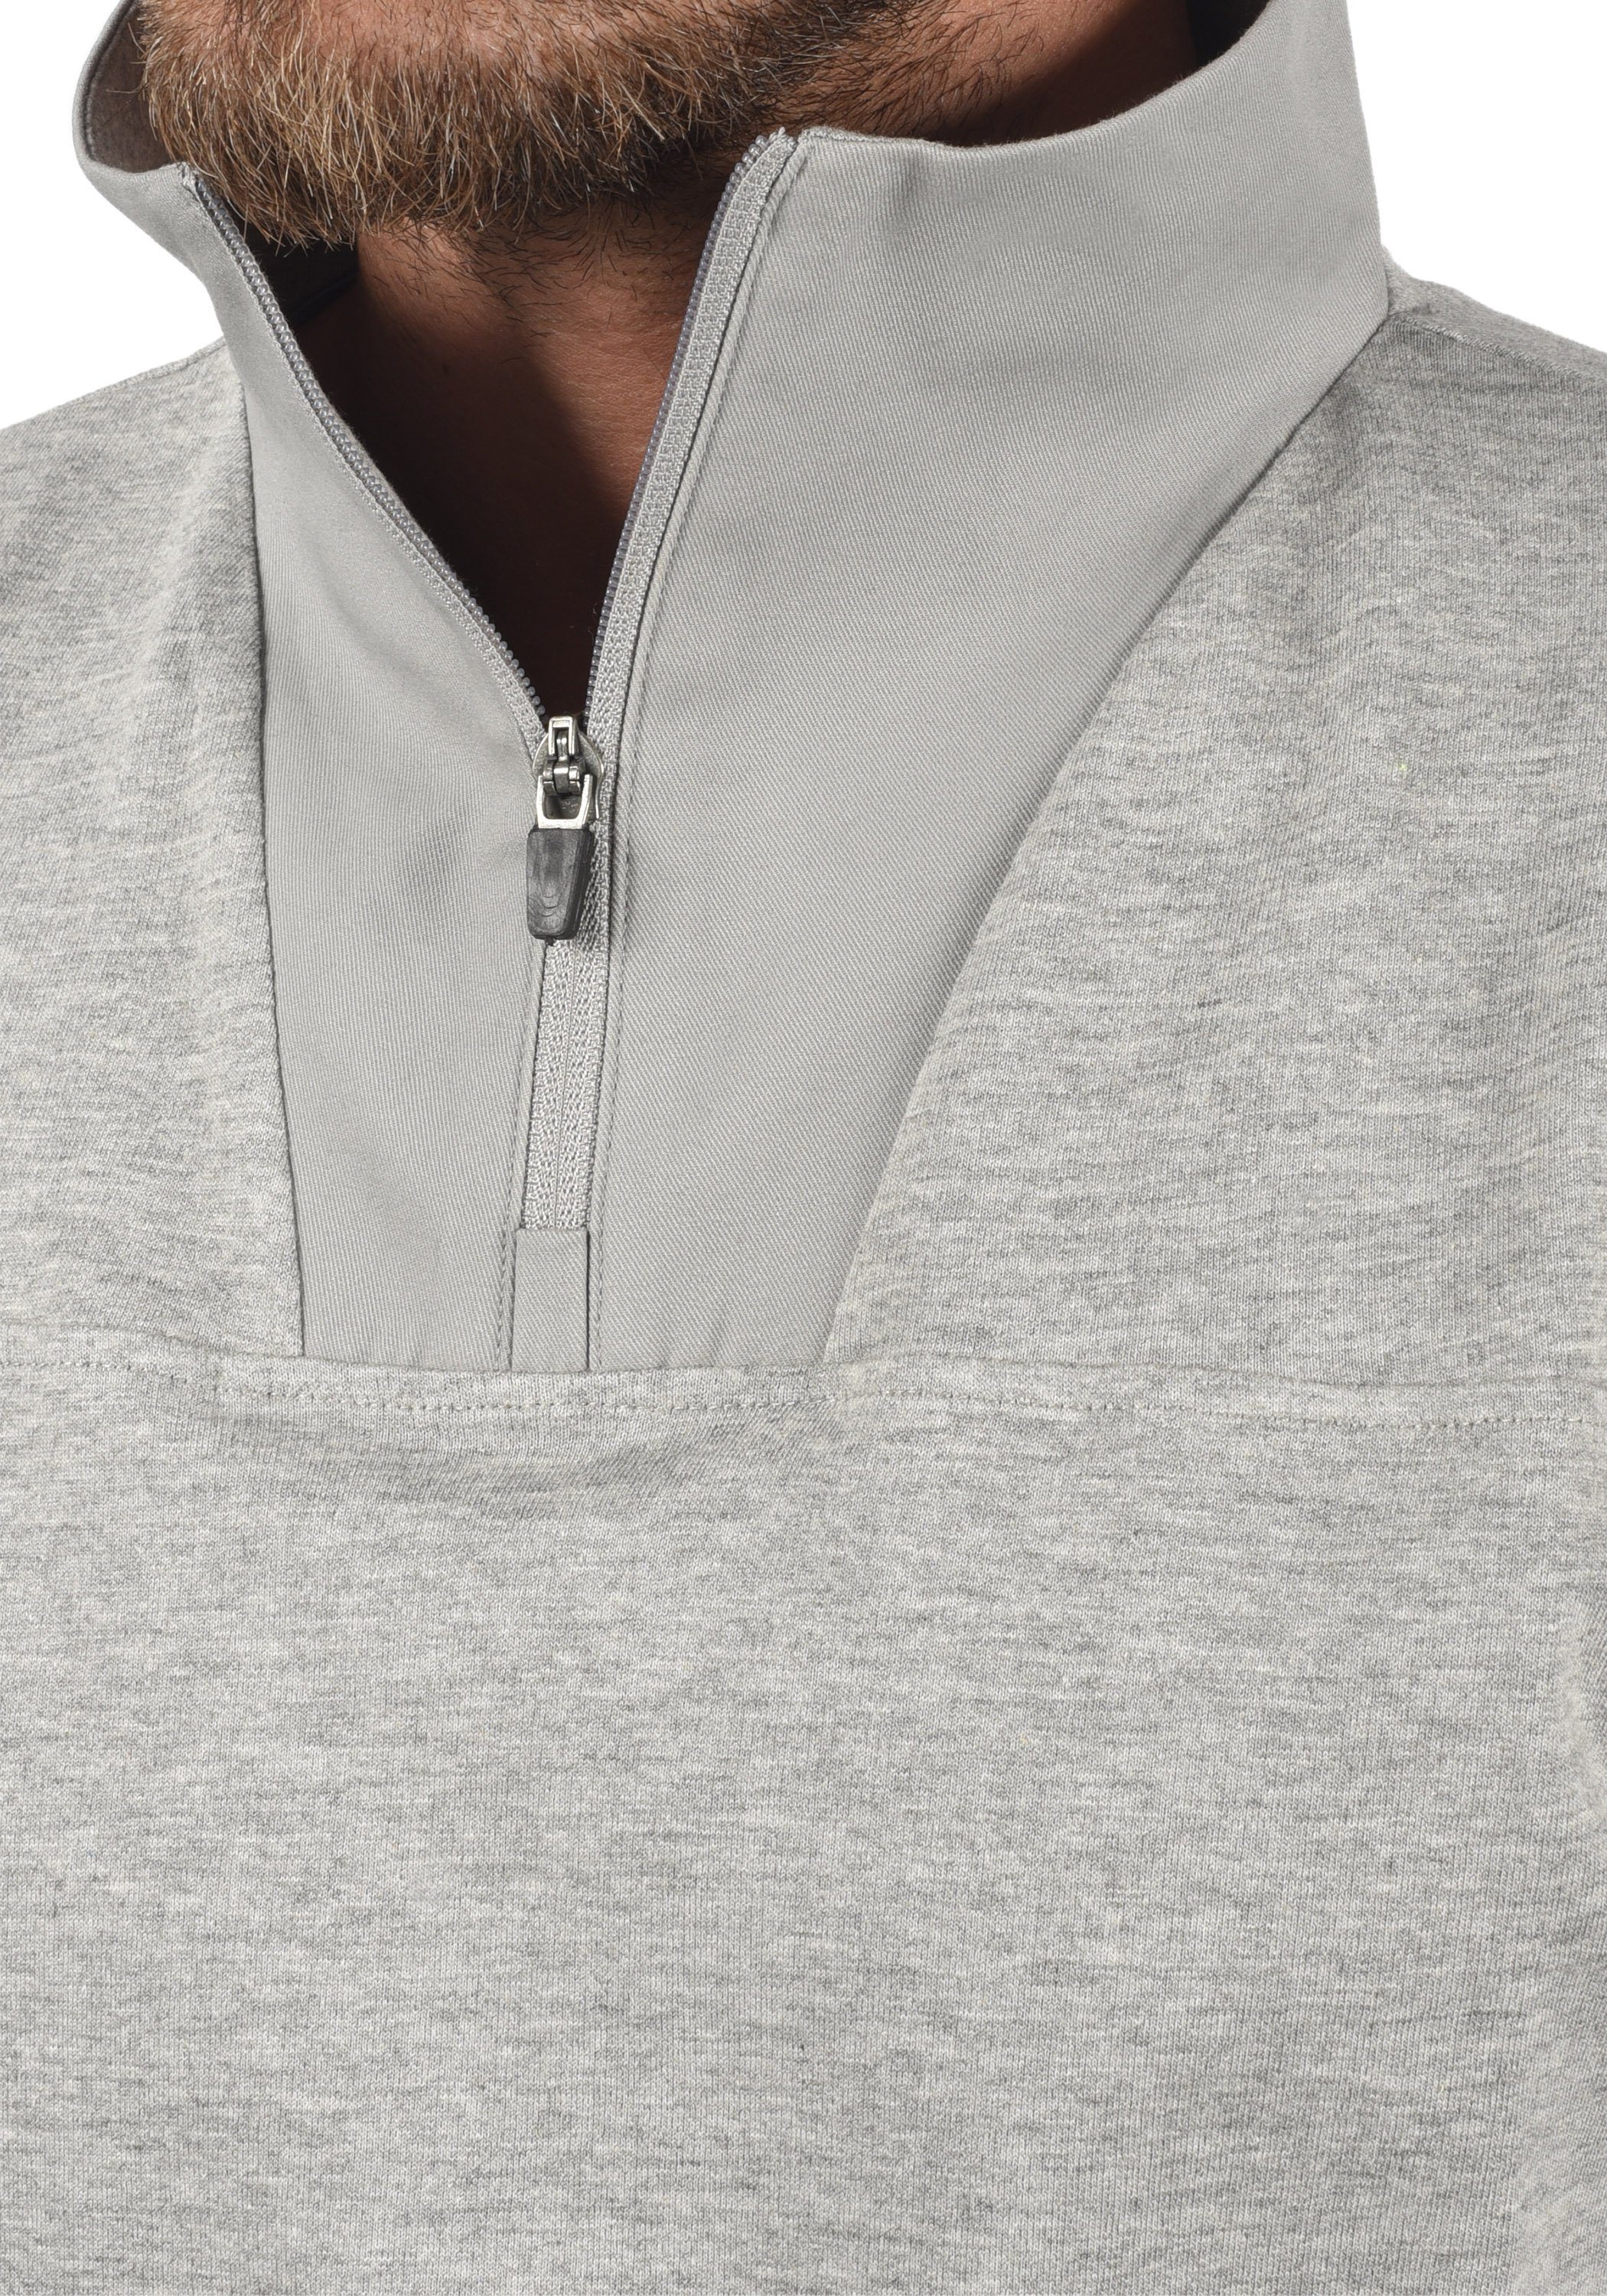 !Solid (1840051) Melange Sweatpulli SDJorke Sweatshirt Grey